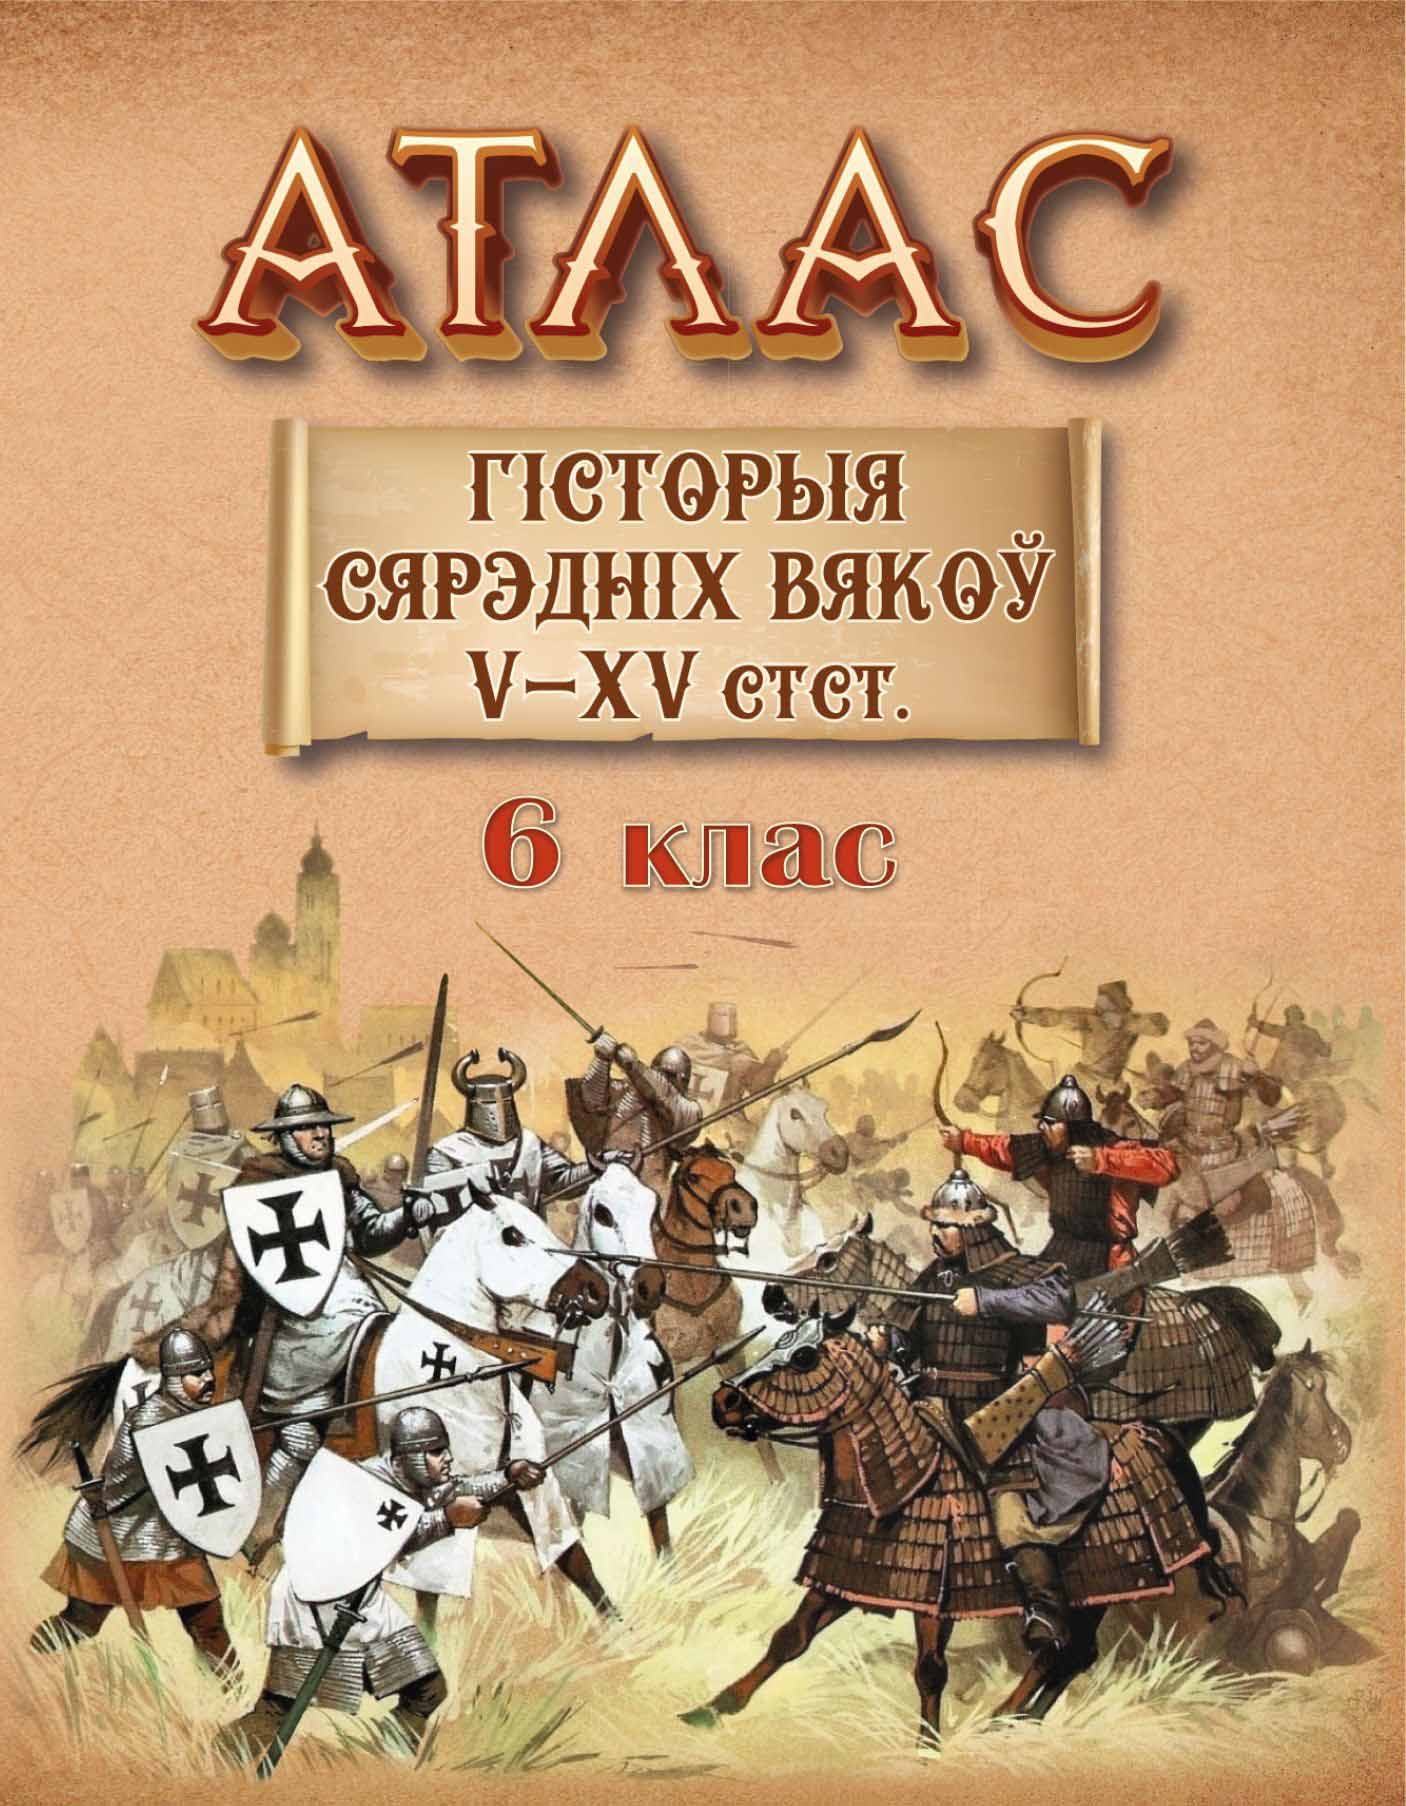 Атлас “Гісторыя Сярэдніх вякоў V-XV стст." 6 клас